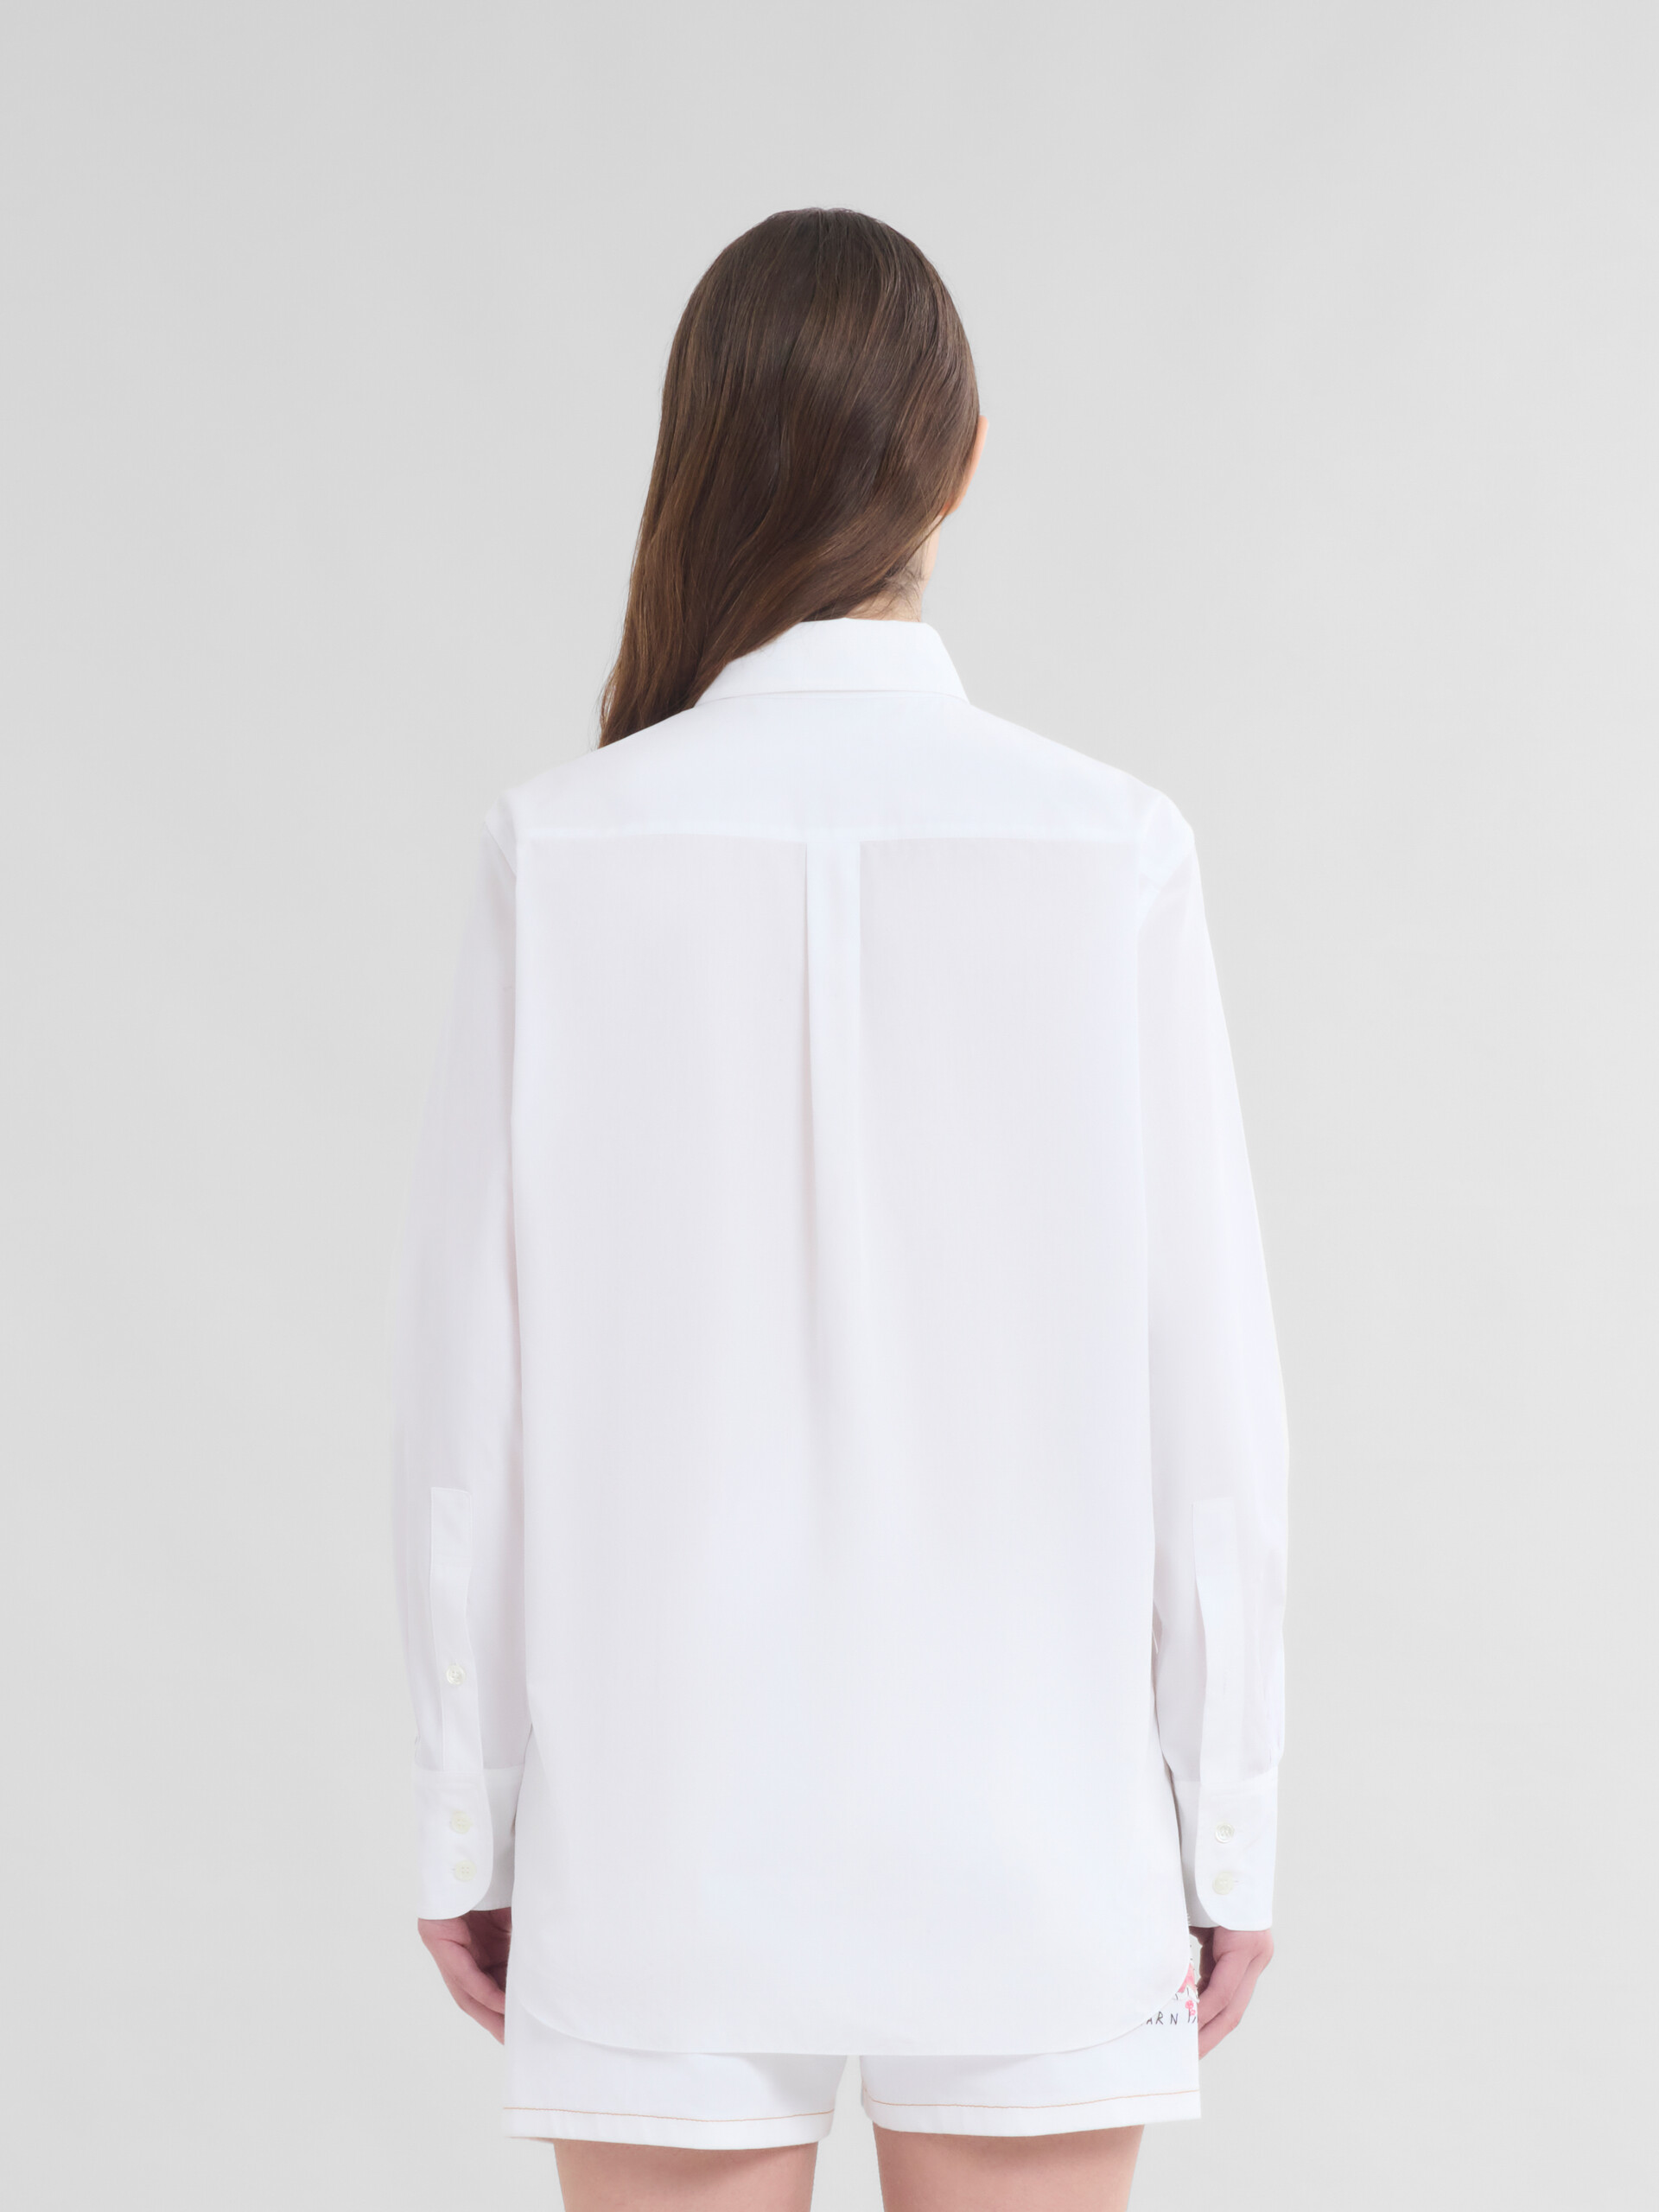 Camisa blanca de popelina ecológica con parches en forma de flor - Camisas - Image 3